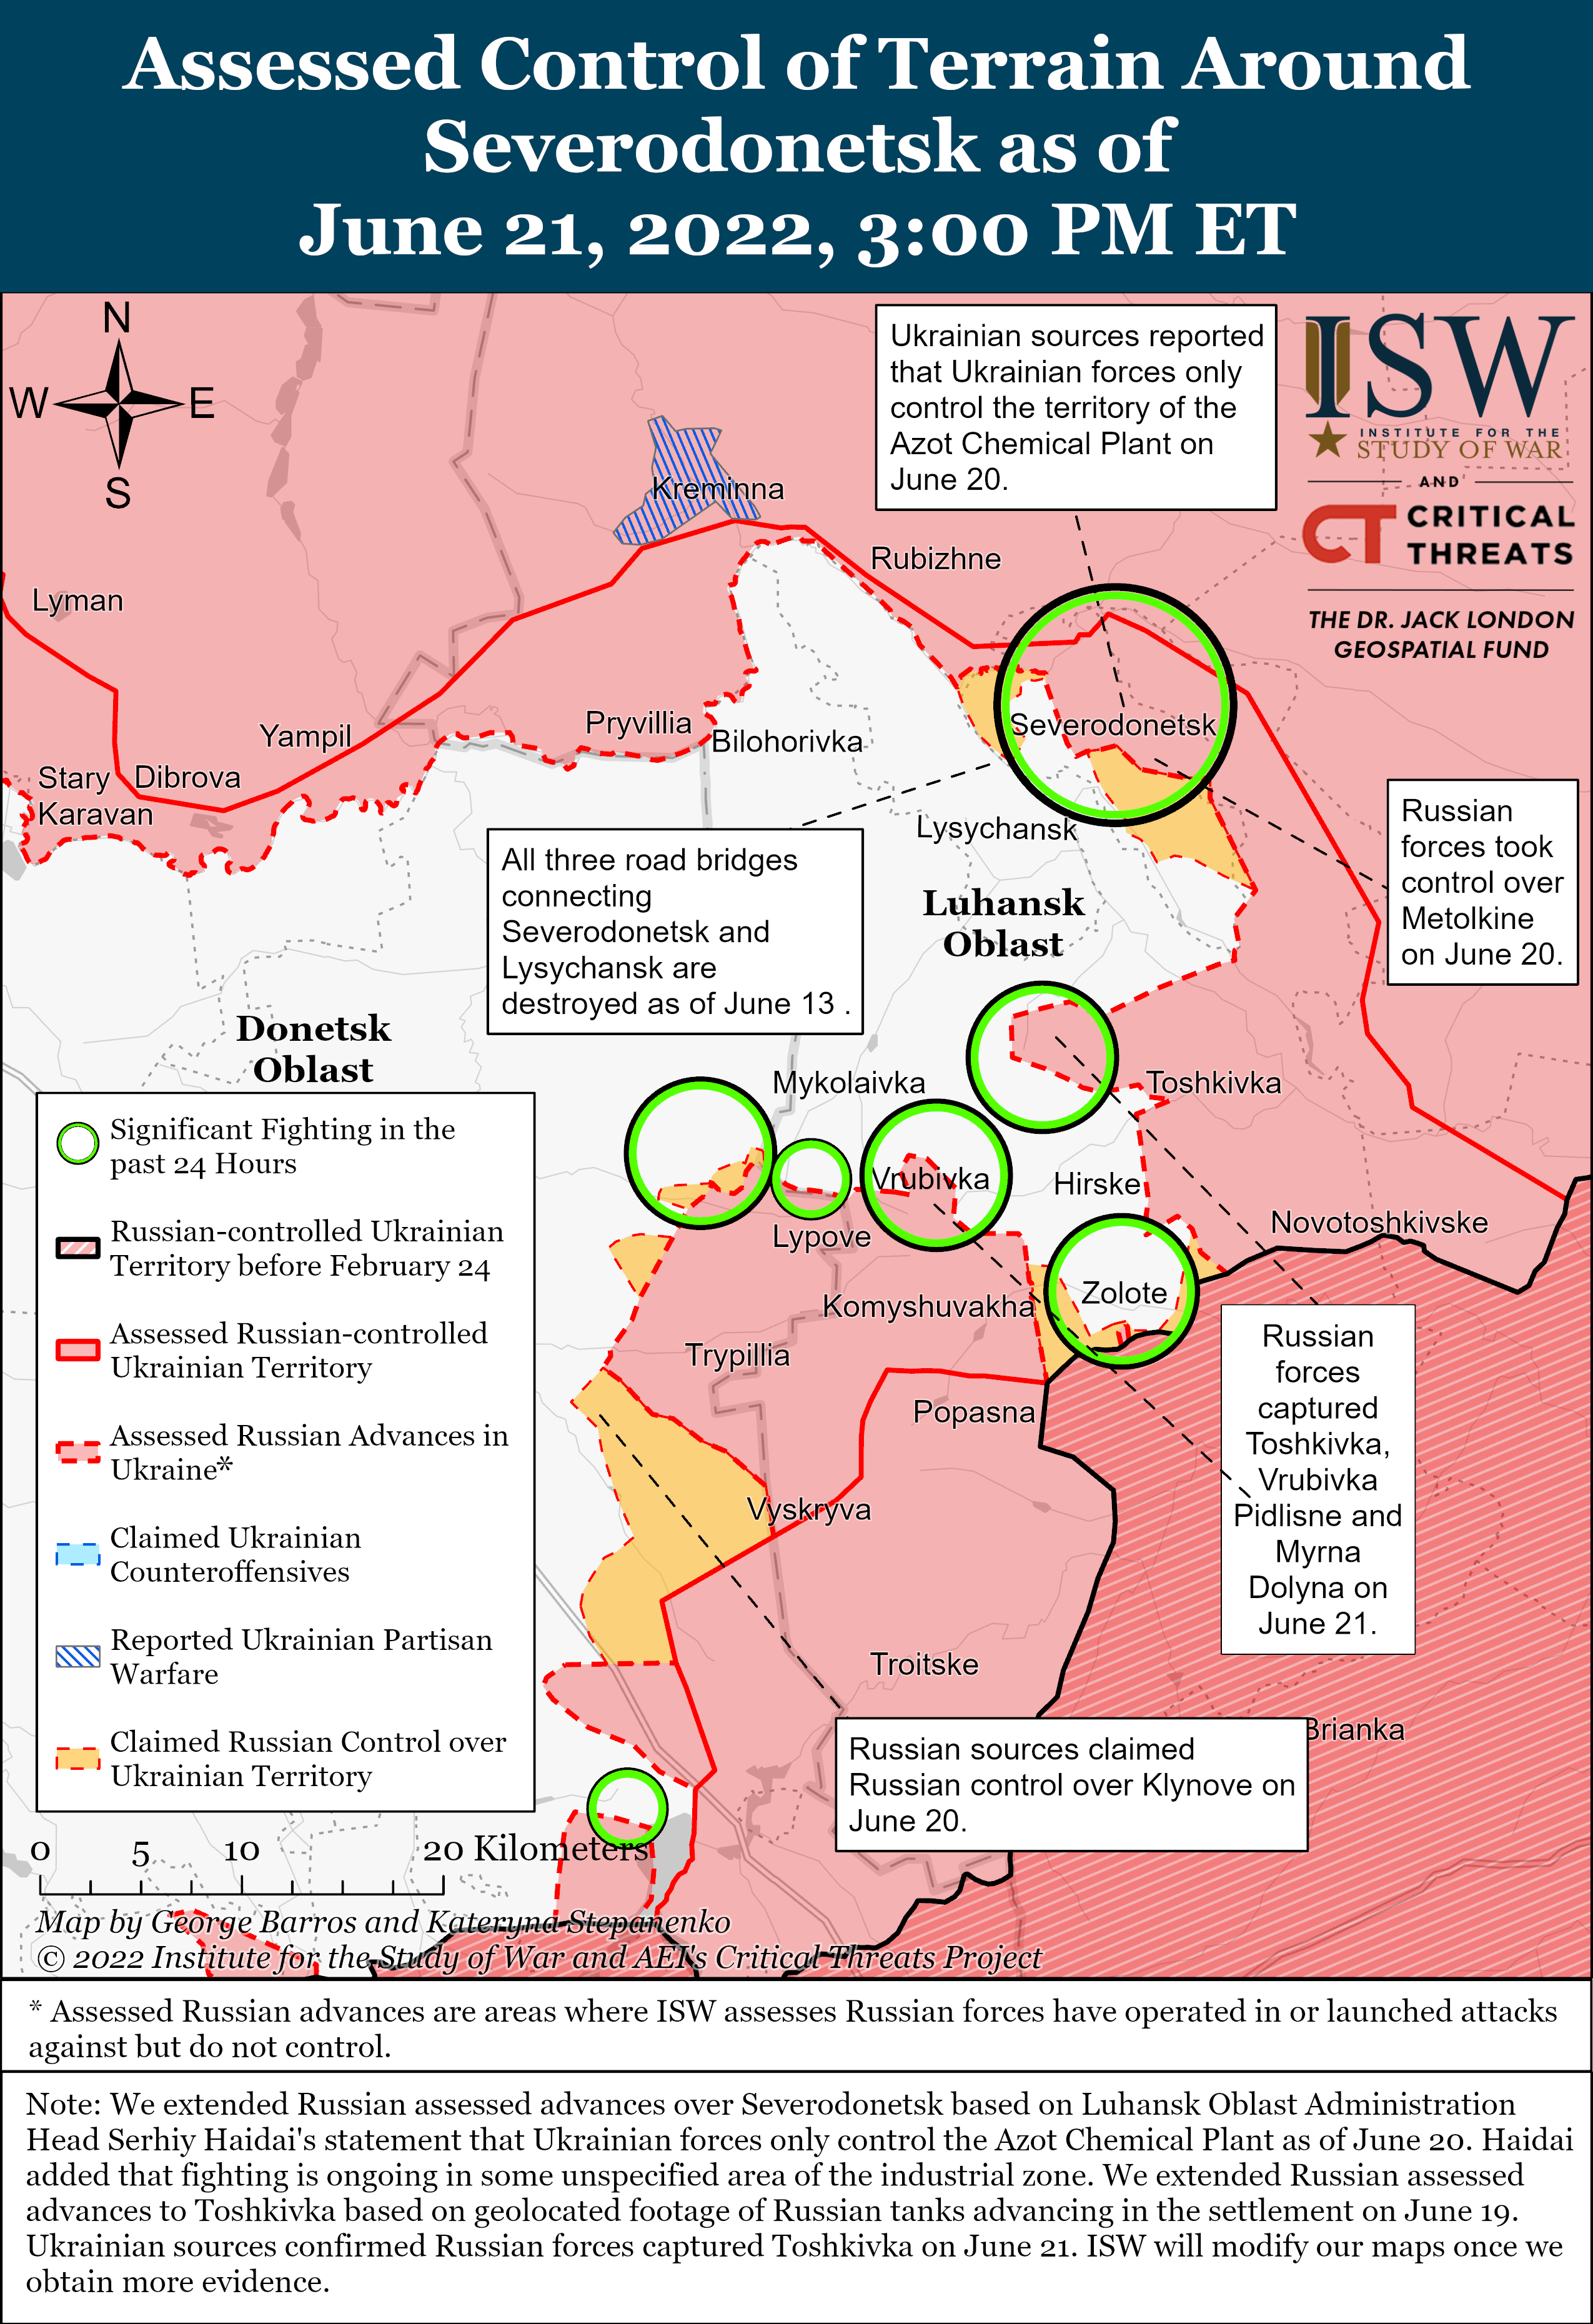 Wie ist der aktuelle Stand (21.06.22) der russischen Truppen in der Ukraine?